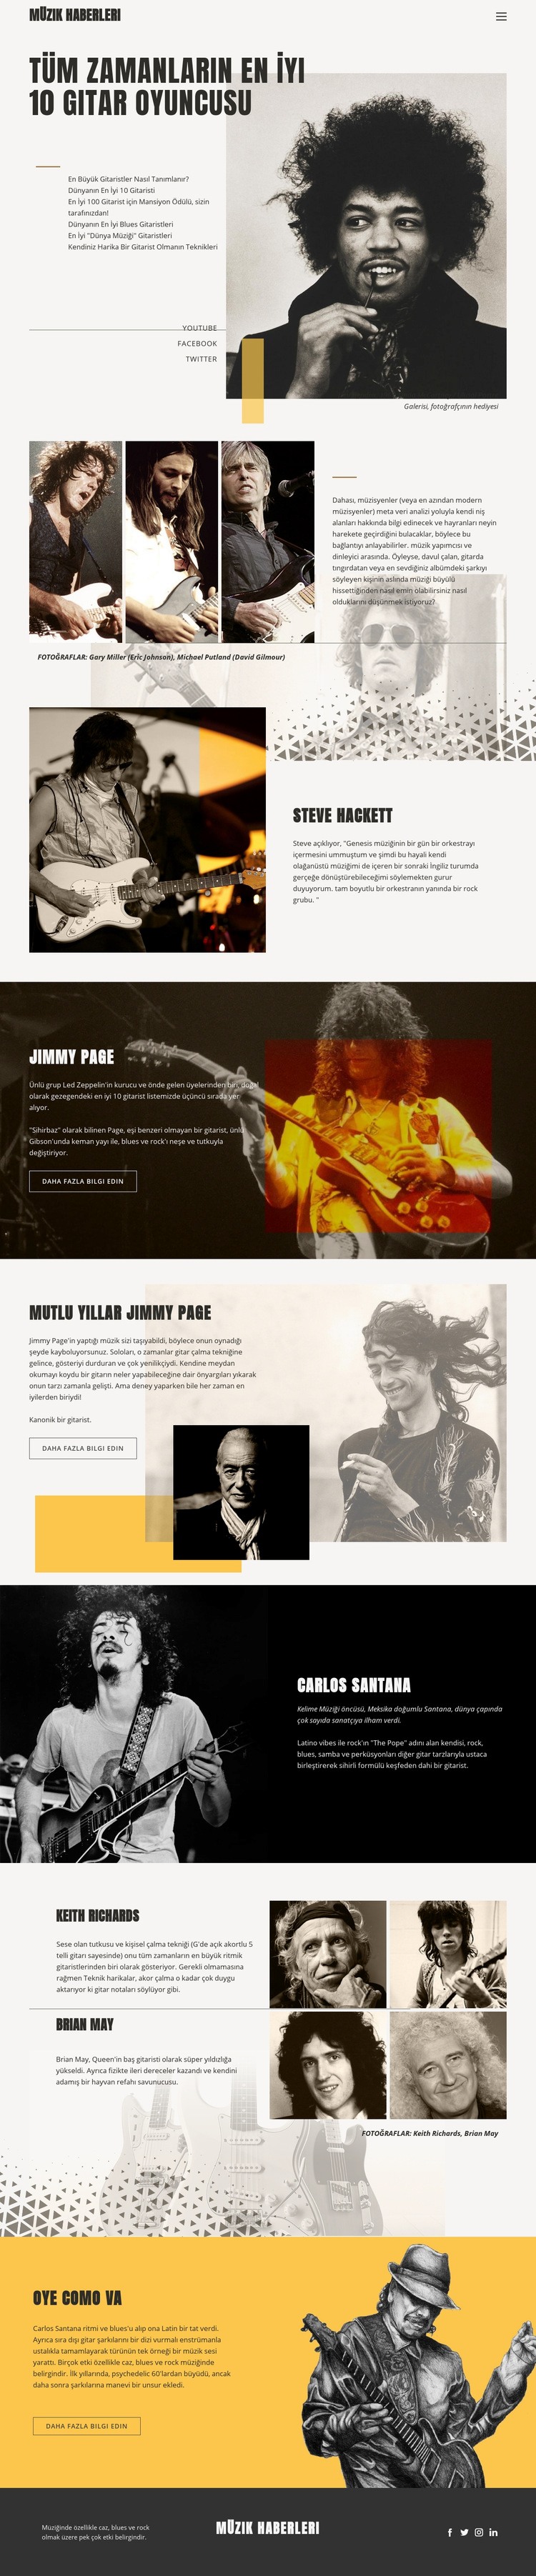 En İyi Gitar Oyuncular Web sitesi tasarımı